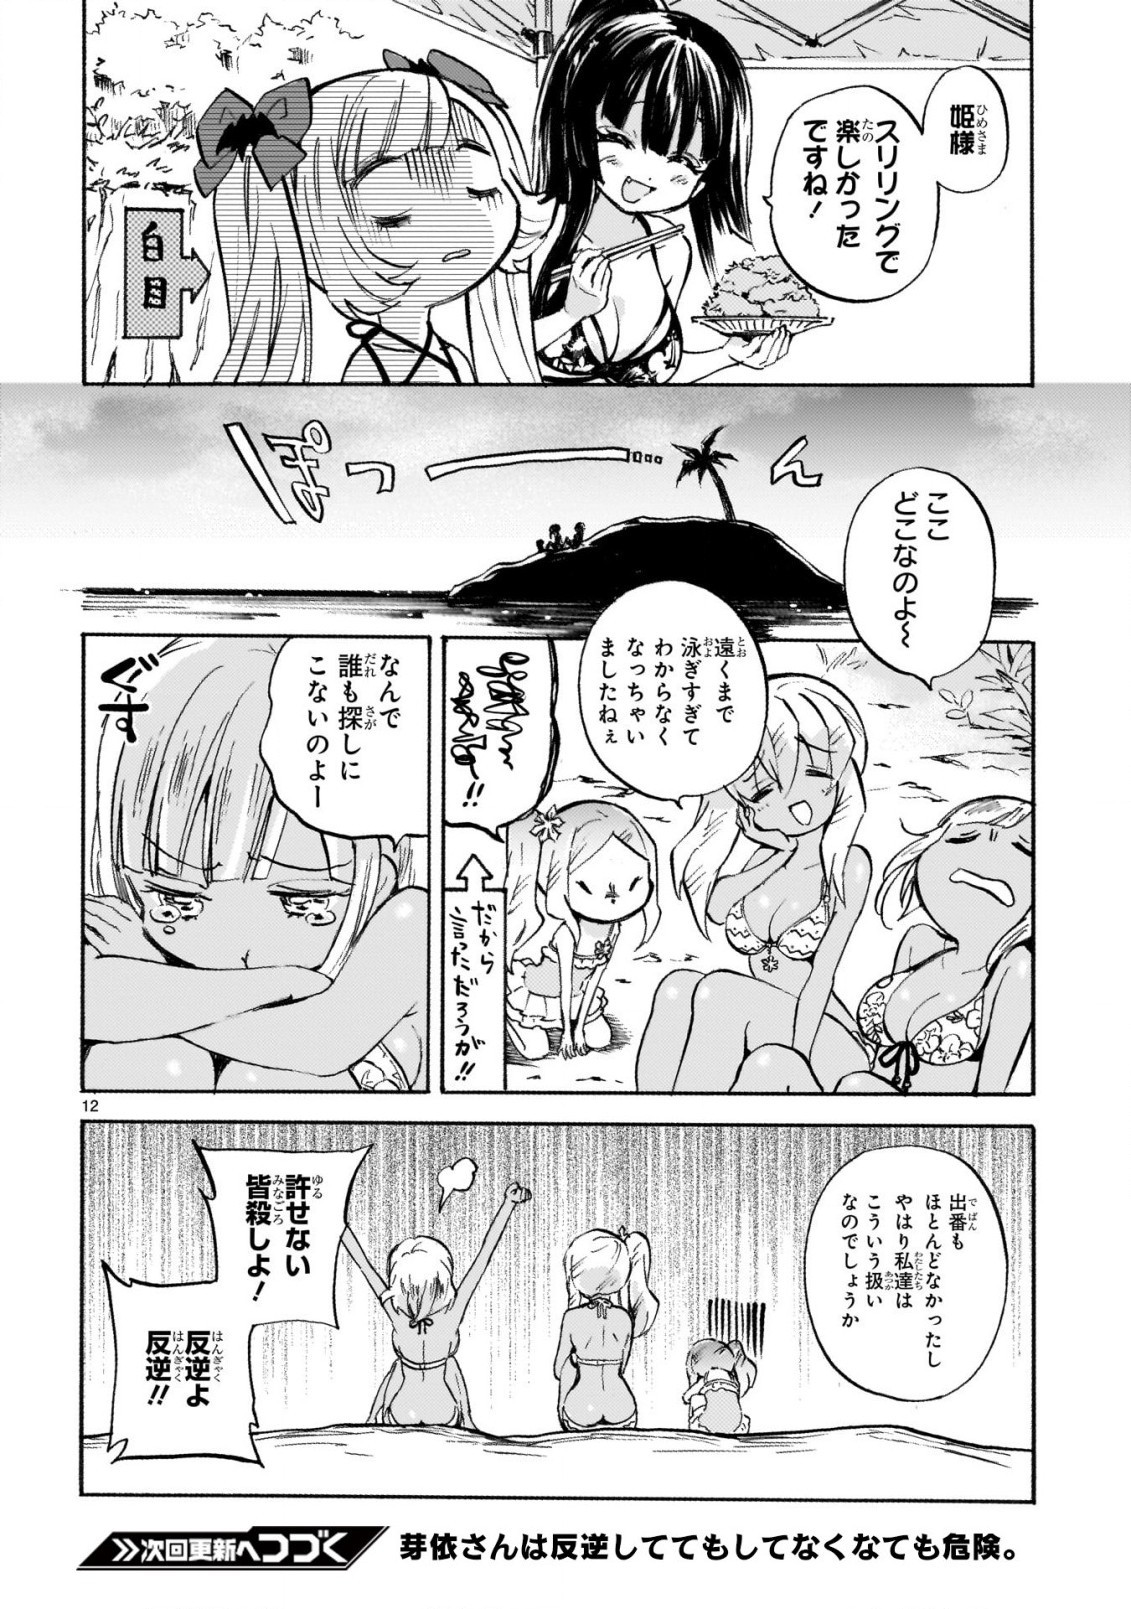 Jashin-chan Dropkick - Chapter 238-2 - Page 12